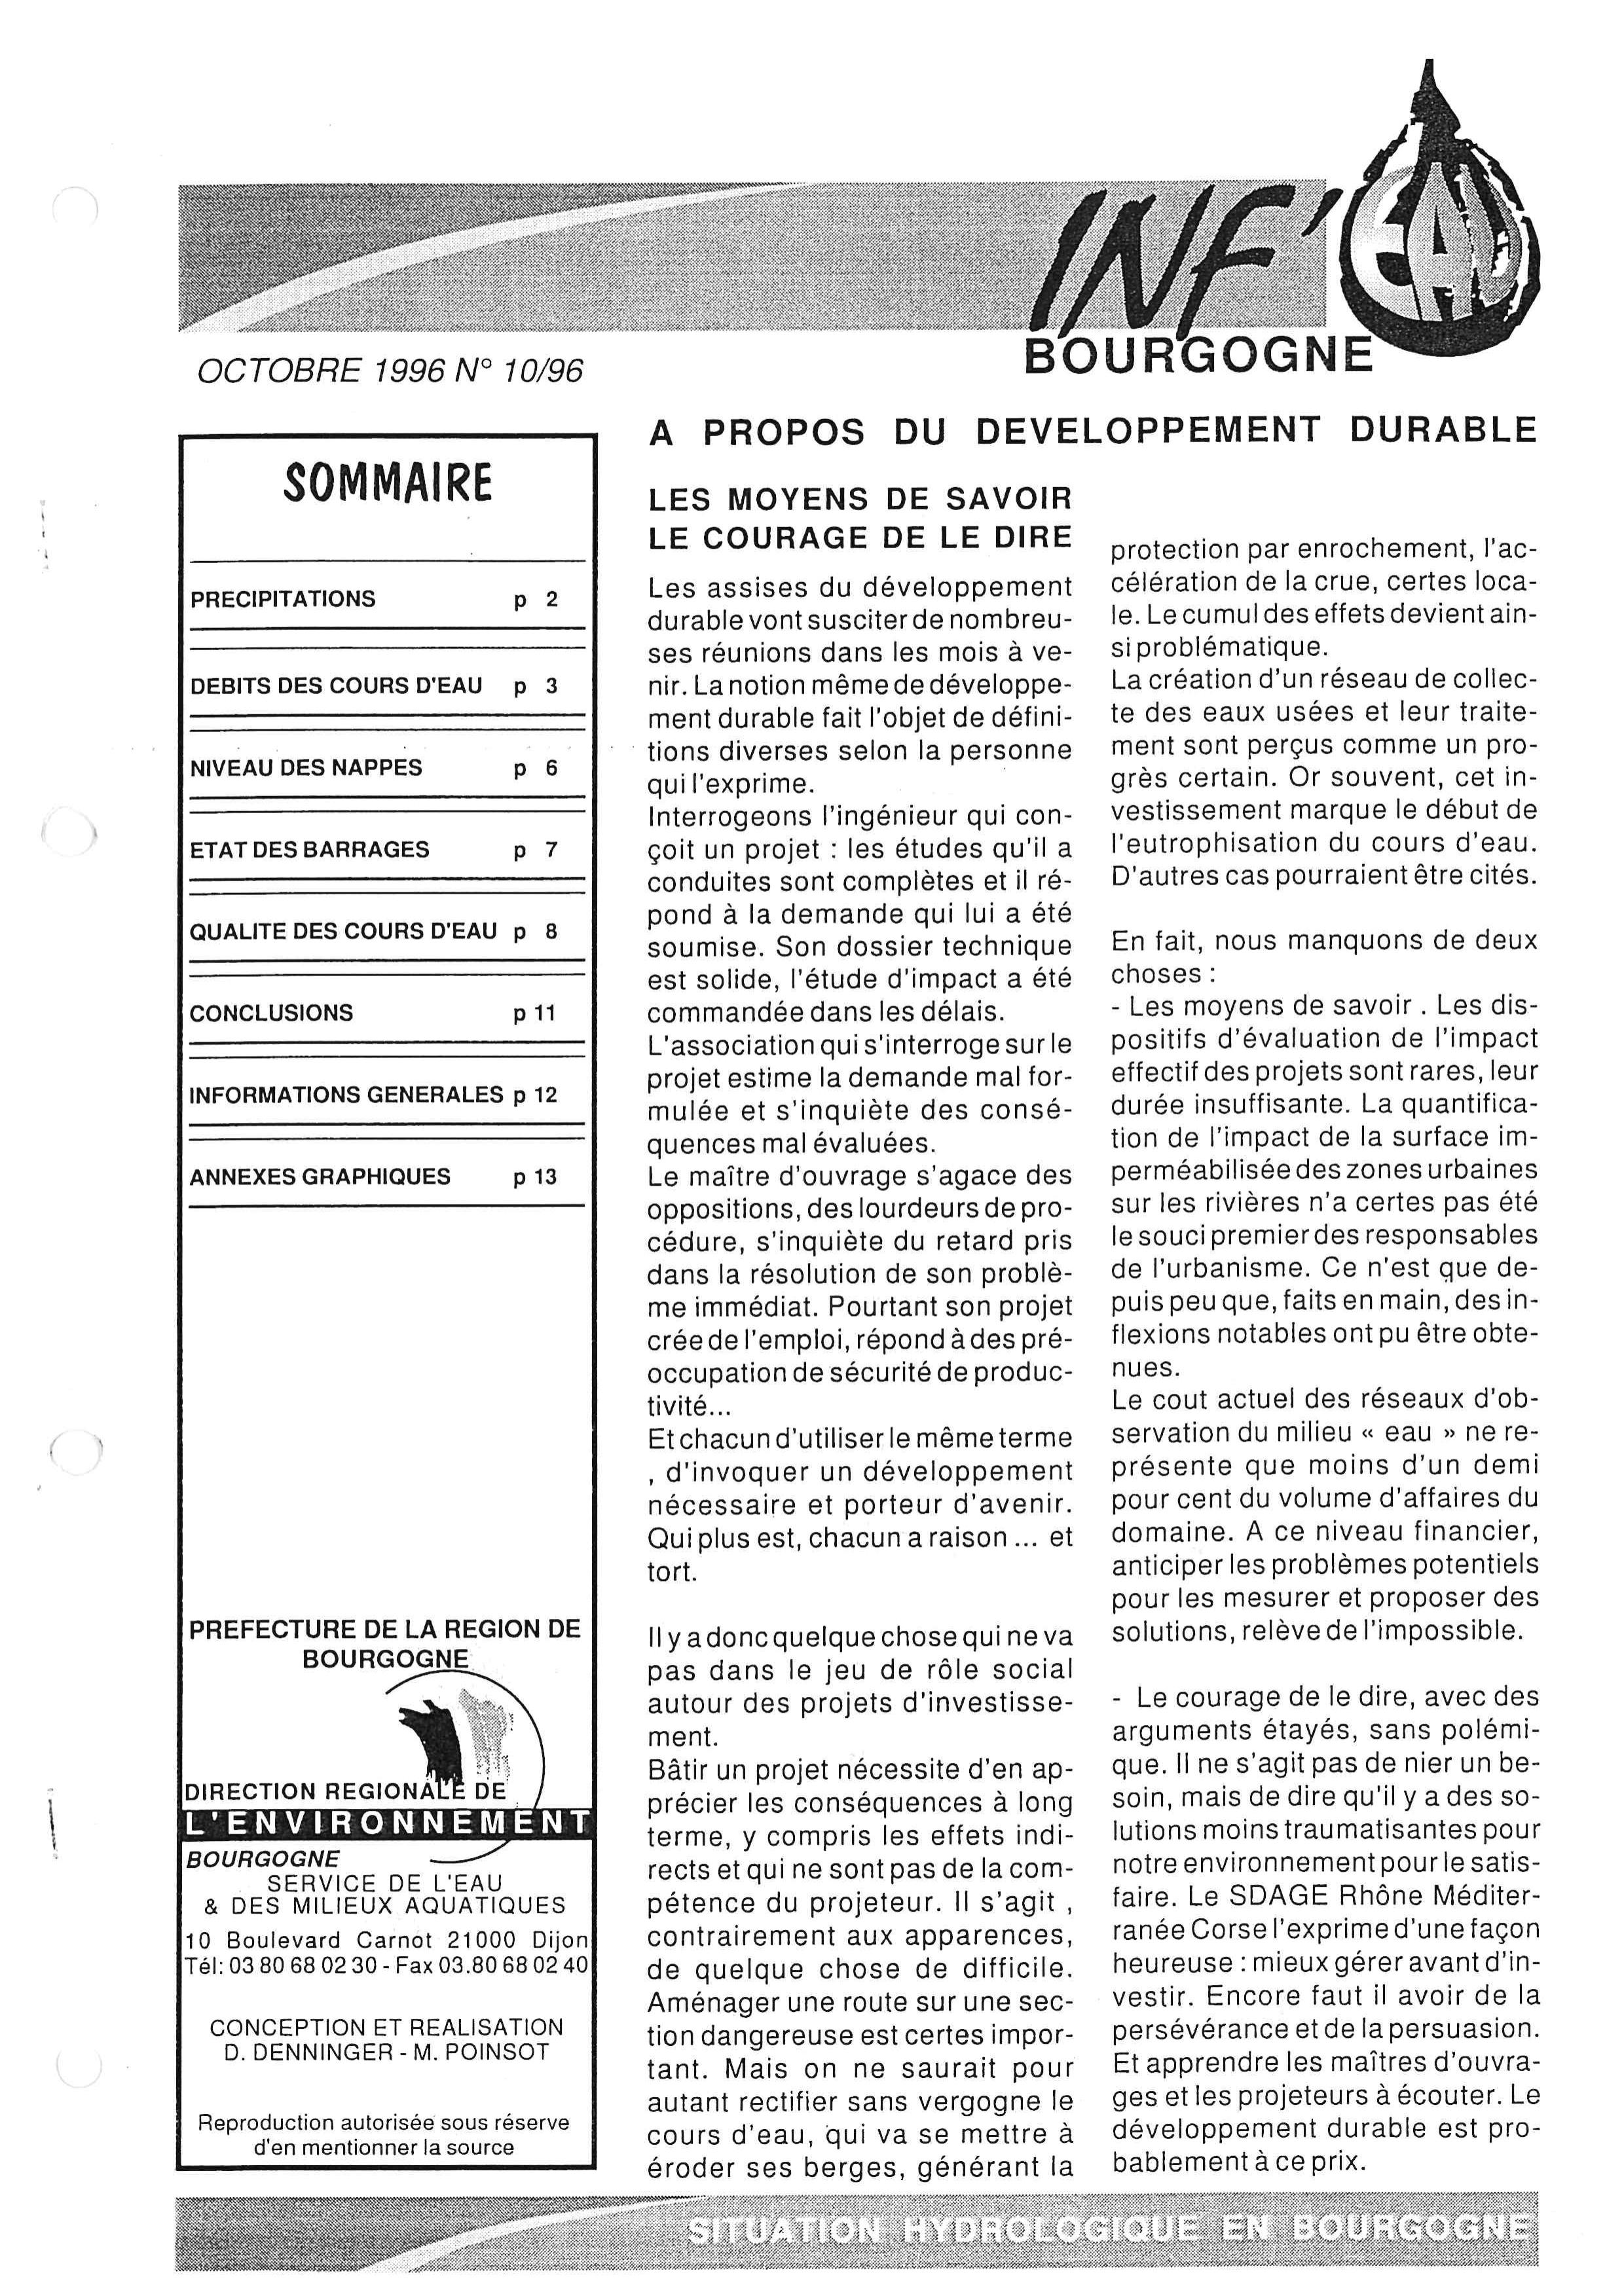 Bulletin hydrologique du mois d'octobre 1996